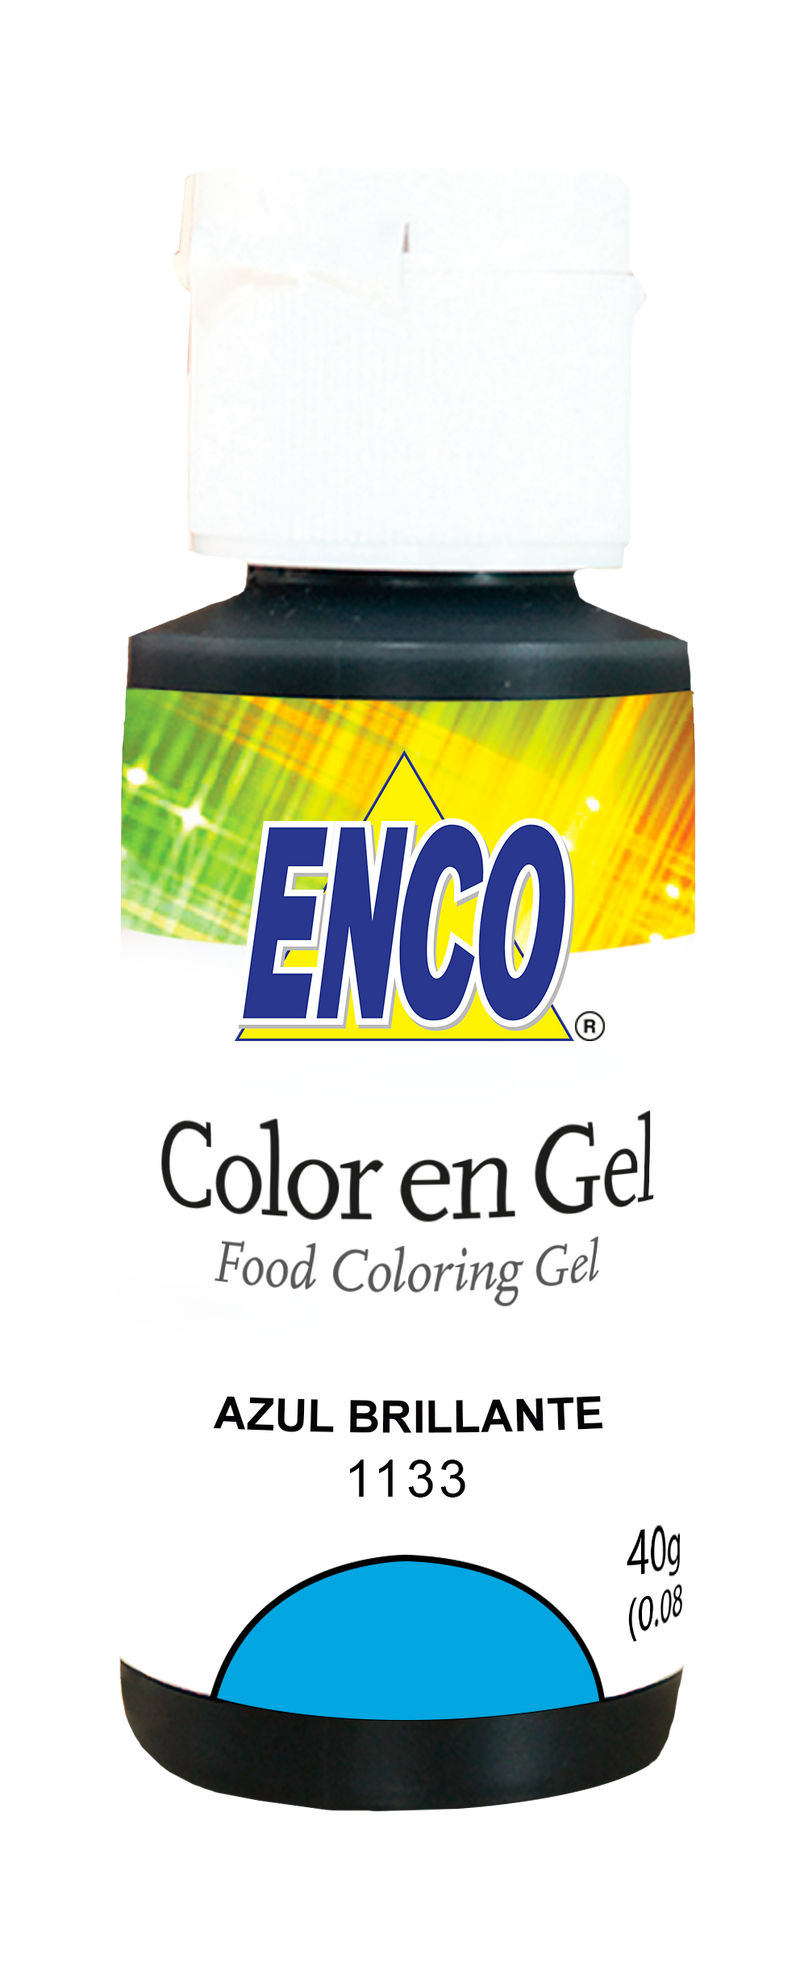 ENCO Bright Blue Gel Coloring 1.4oz